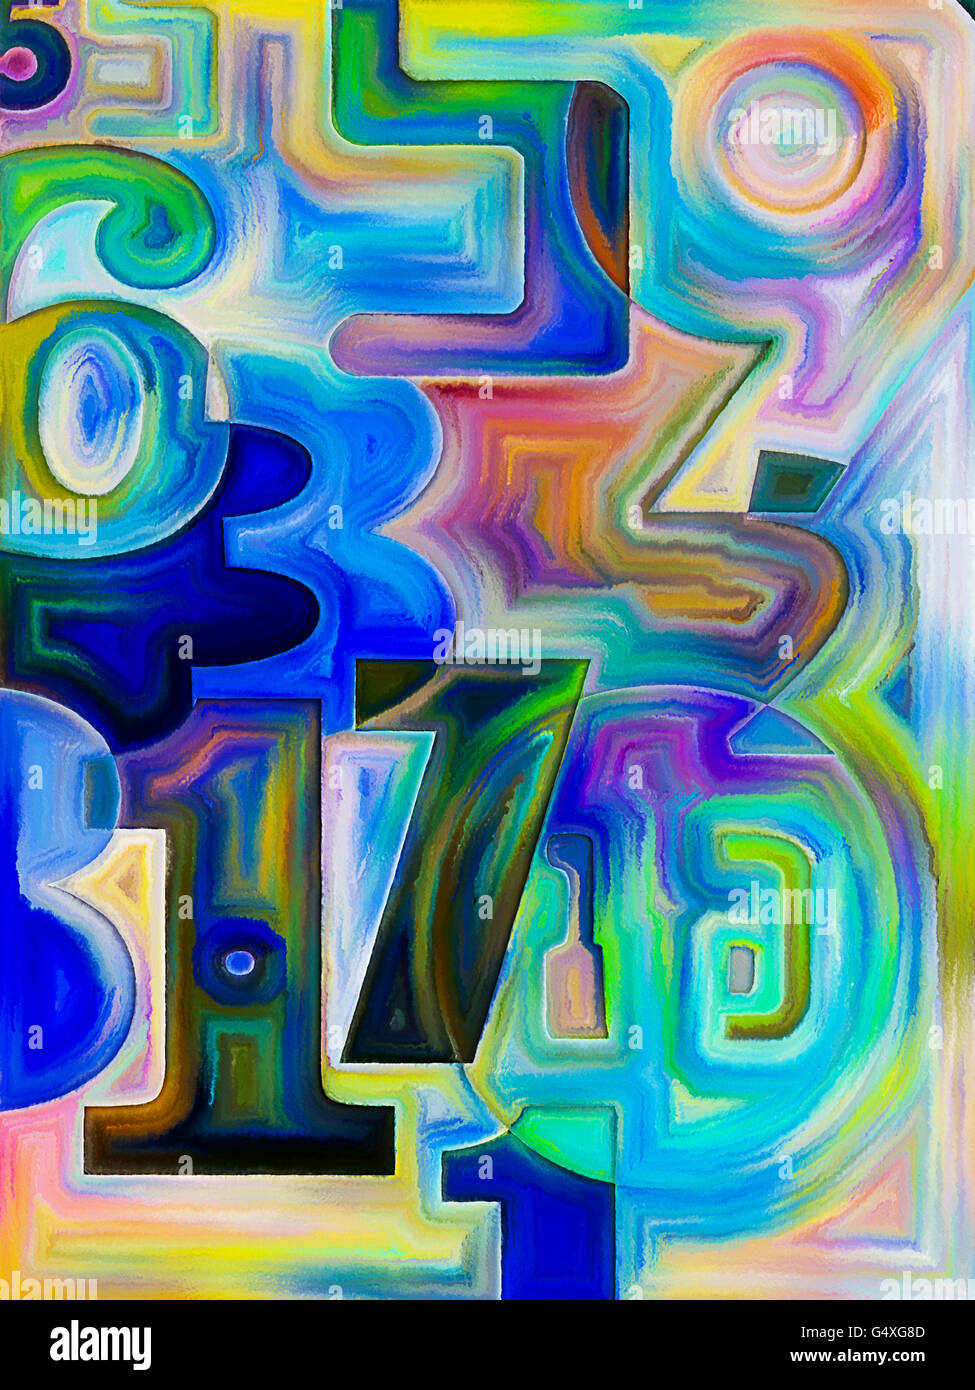 Série Peinture décimal. Conception de base de chiffres décimaux peint sur l'objet des mathématiques, des sciences et de l'éducation Banque D'Images